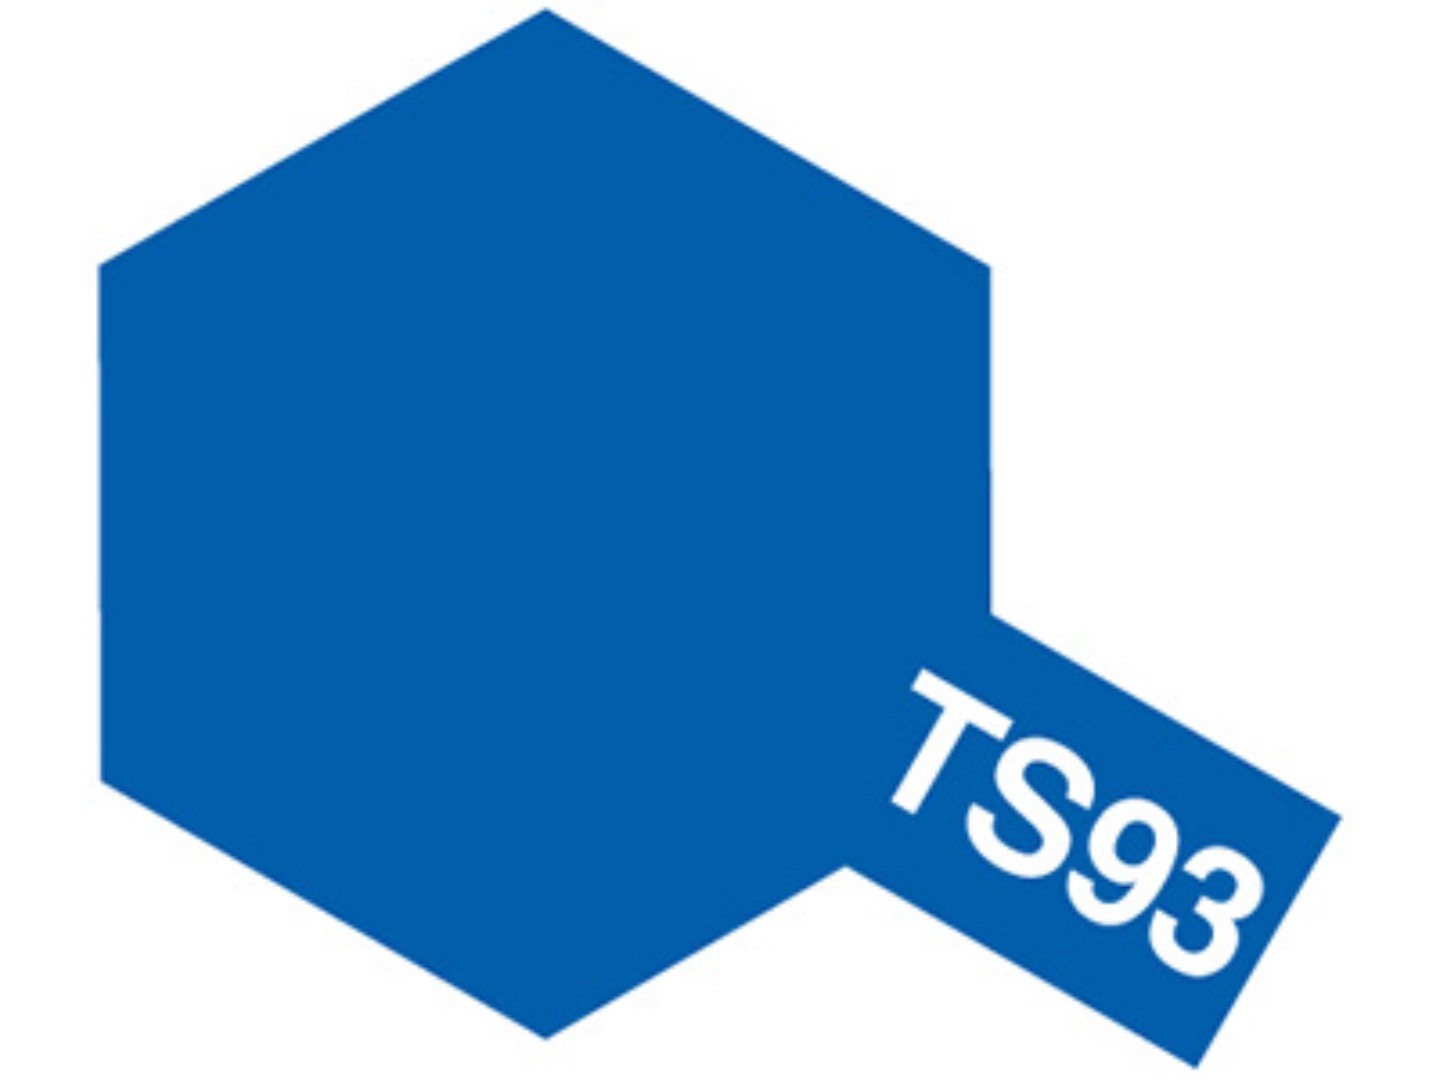 [85093] TS93 퓨어 블루 유광 타미야 스프레이